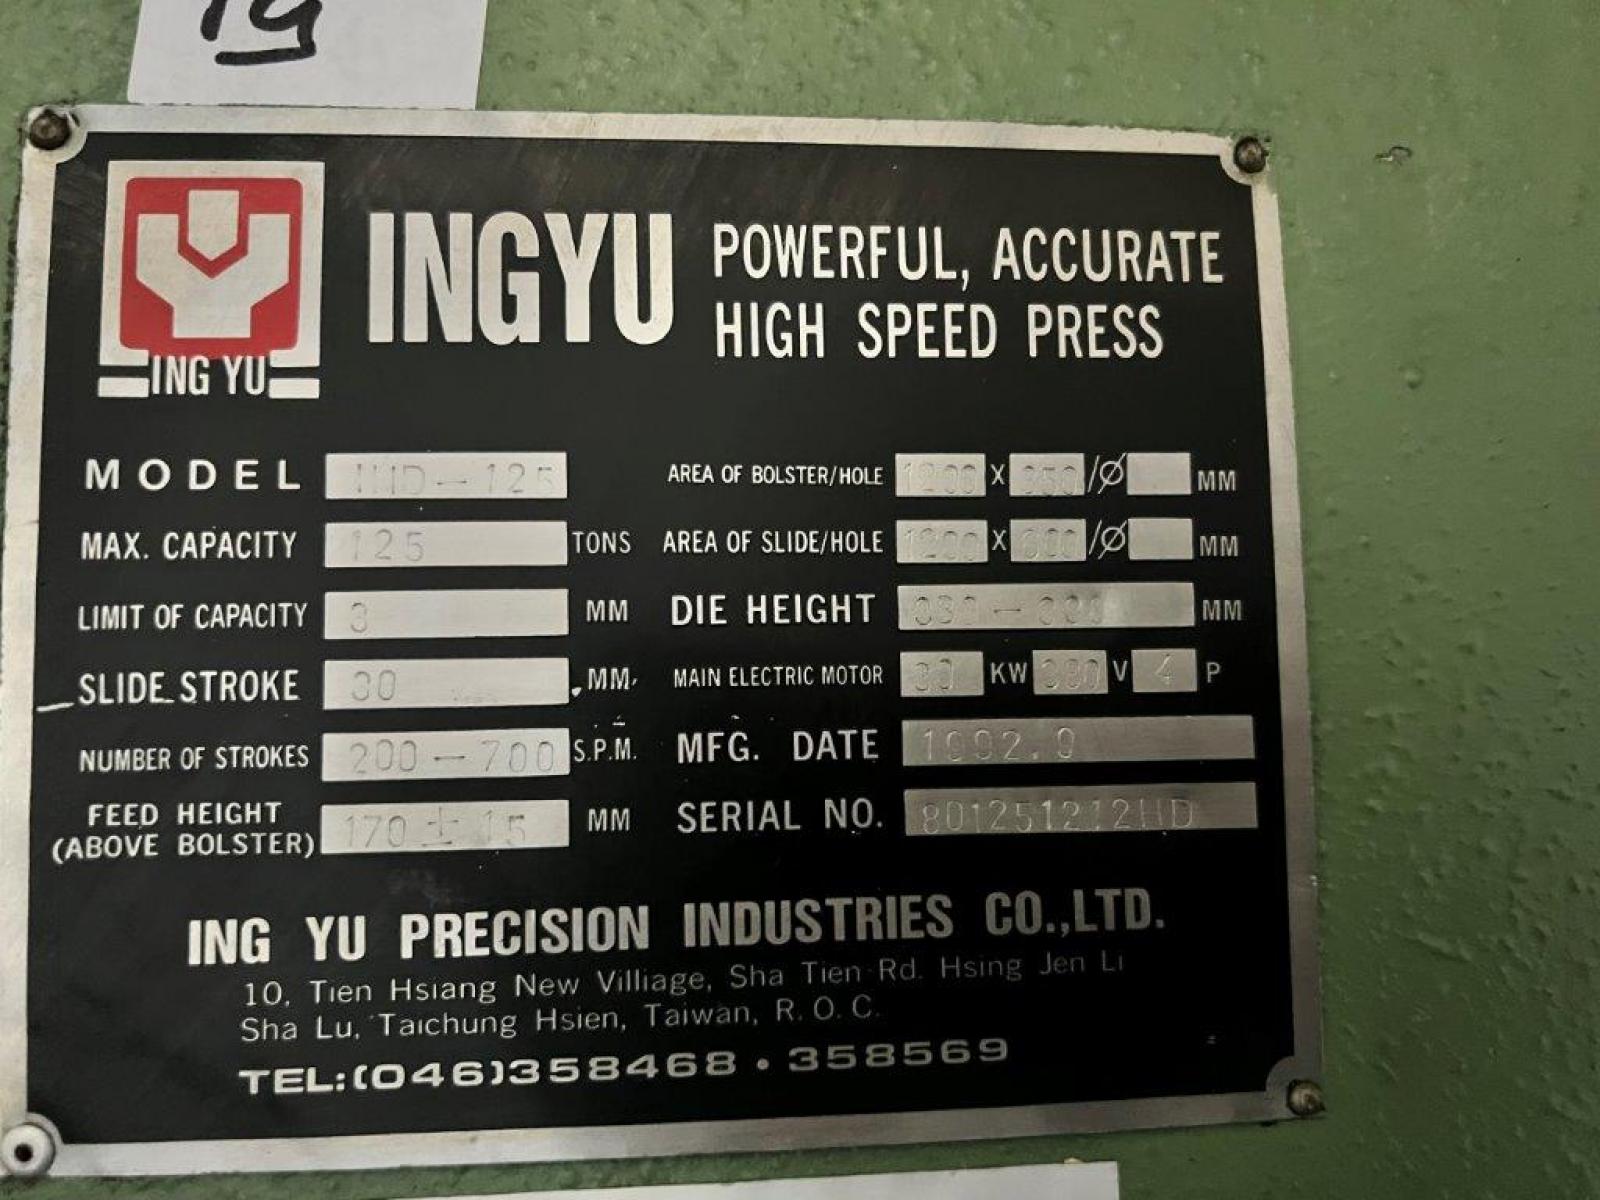 Pressa eccentrica meccanica INGYU, Mod. HID-125T, piano dim. 1200 x 850 mm, serie n. 801251212HD, anno 92 - n. 1 consolle di com